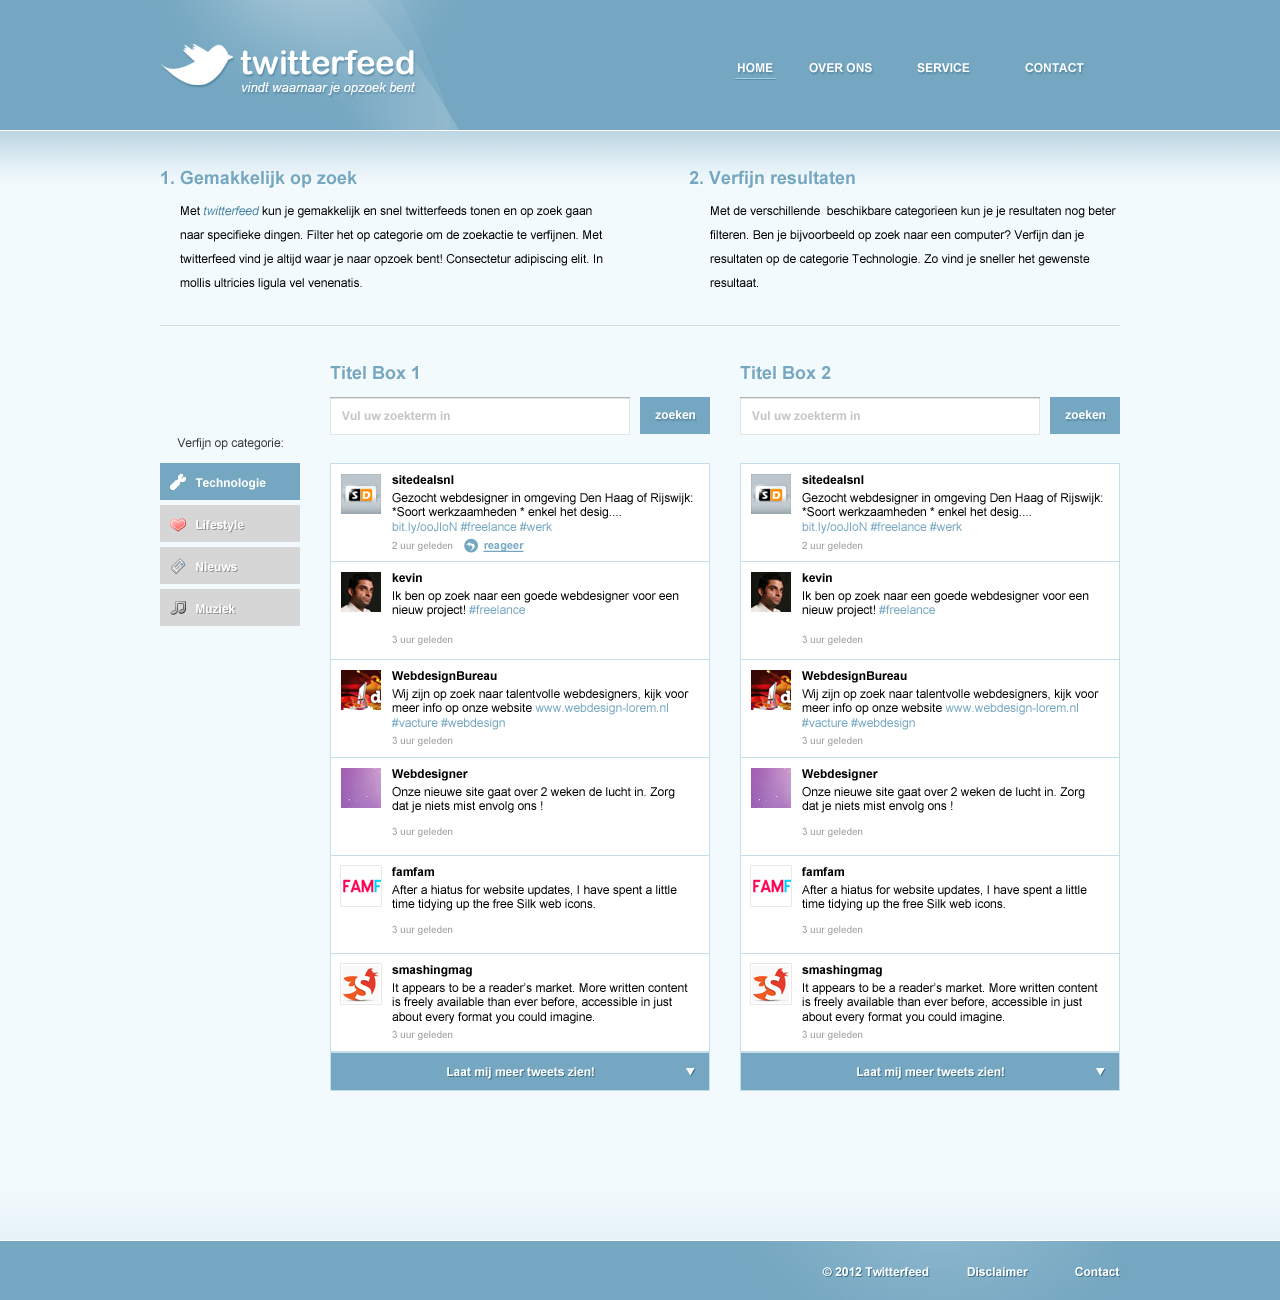 Strakke Twitterfeed layout-twitterfeed-jpg